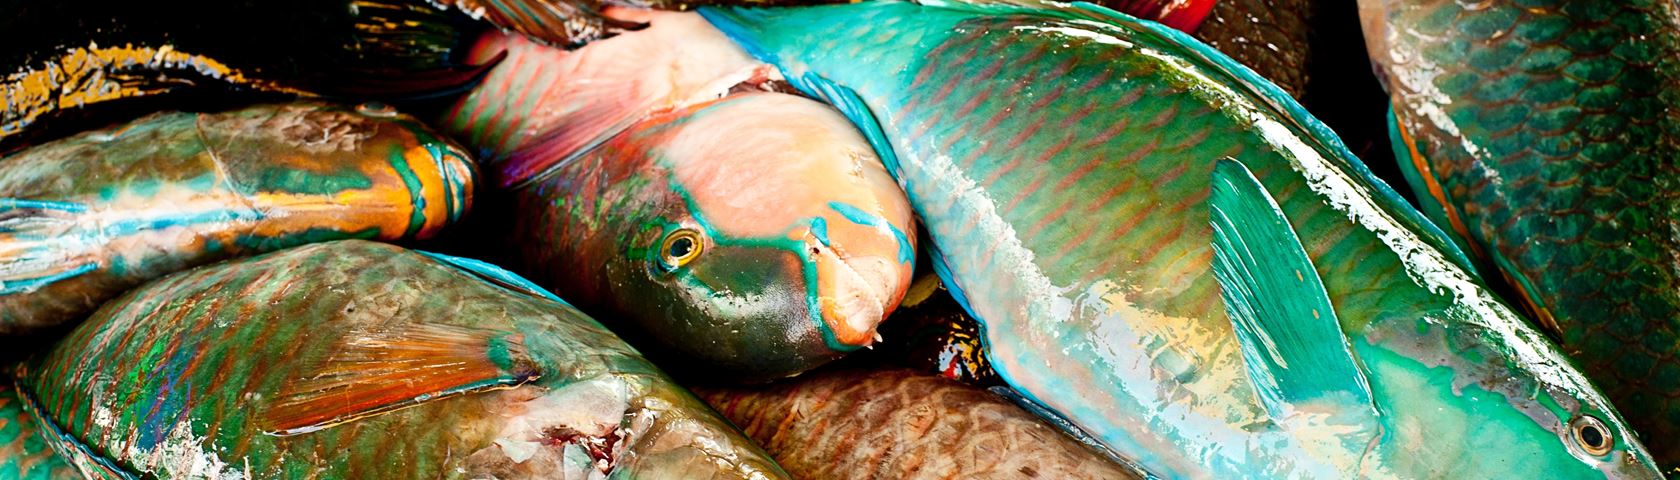 Neon Fish